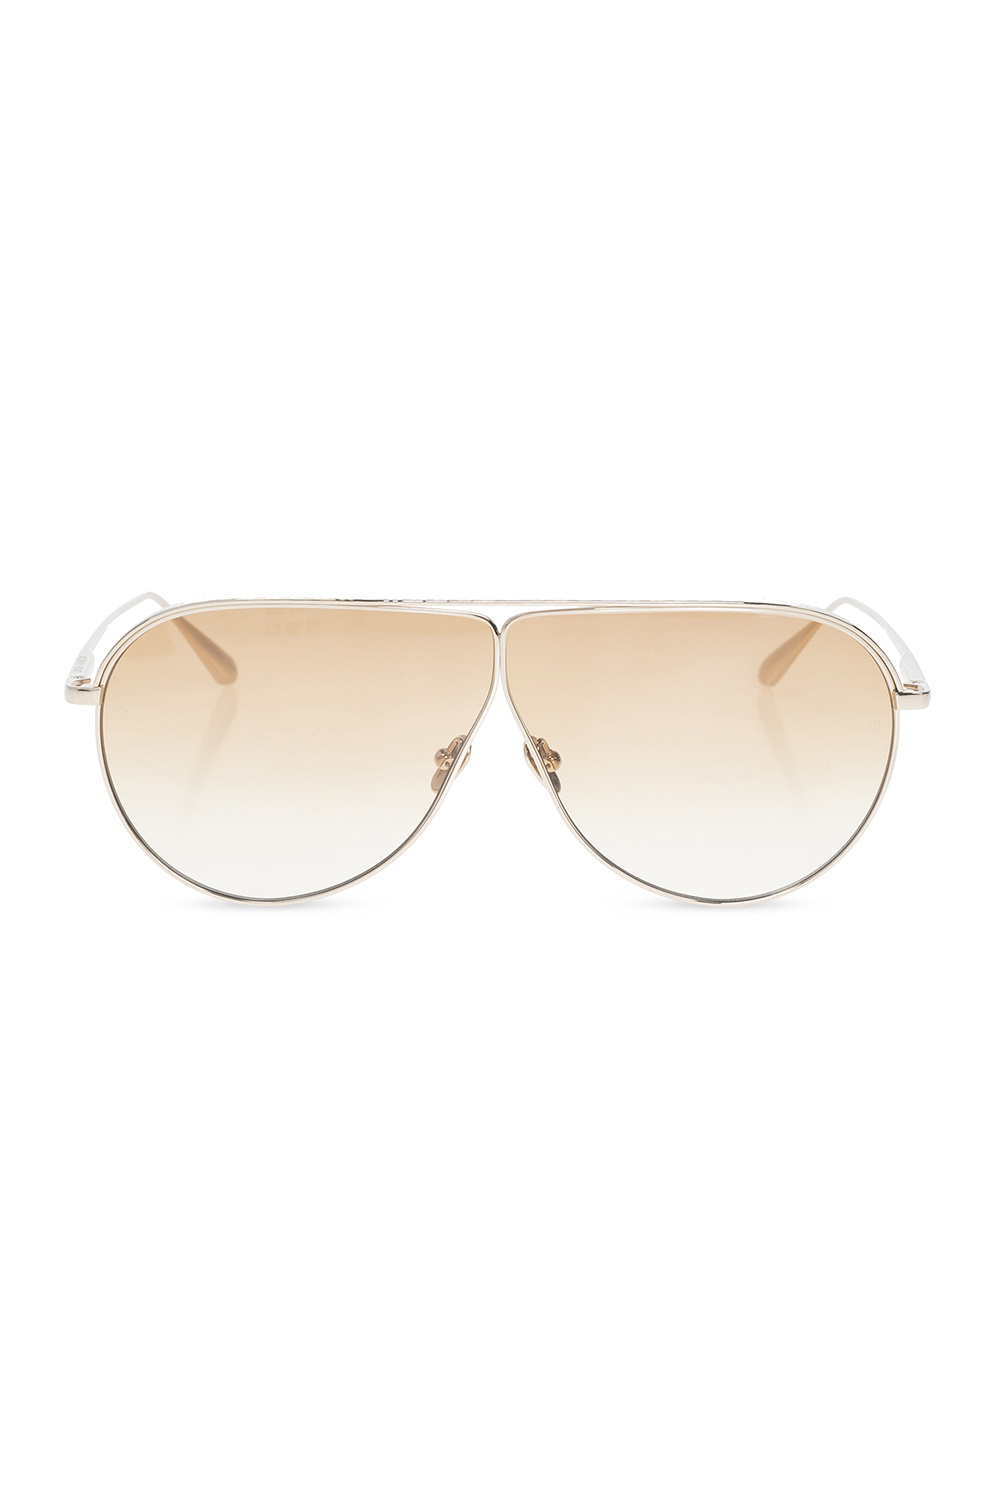 Linda Farrow ‘Hura’ sunglasses